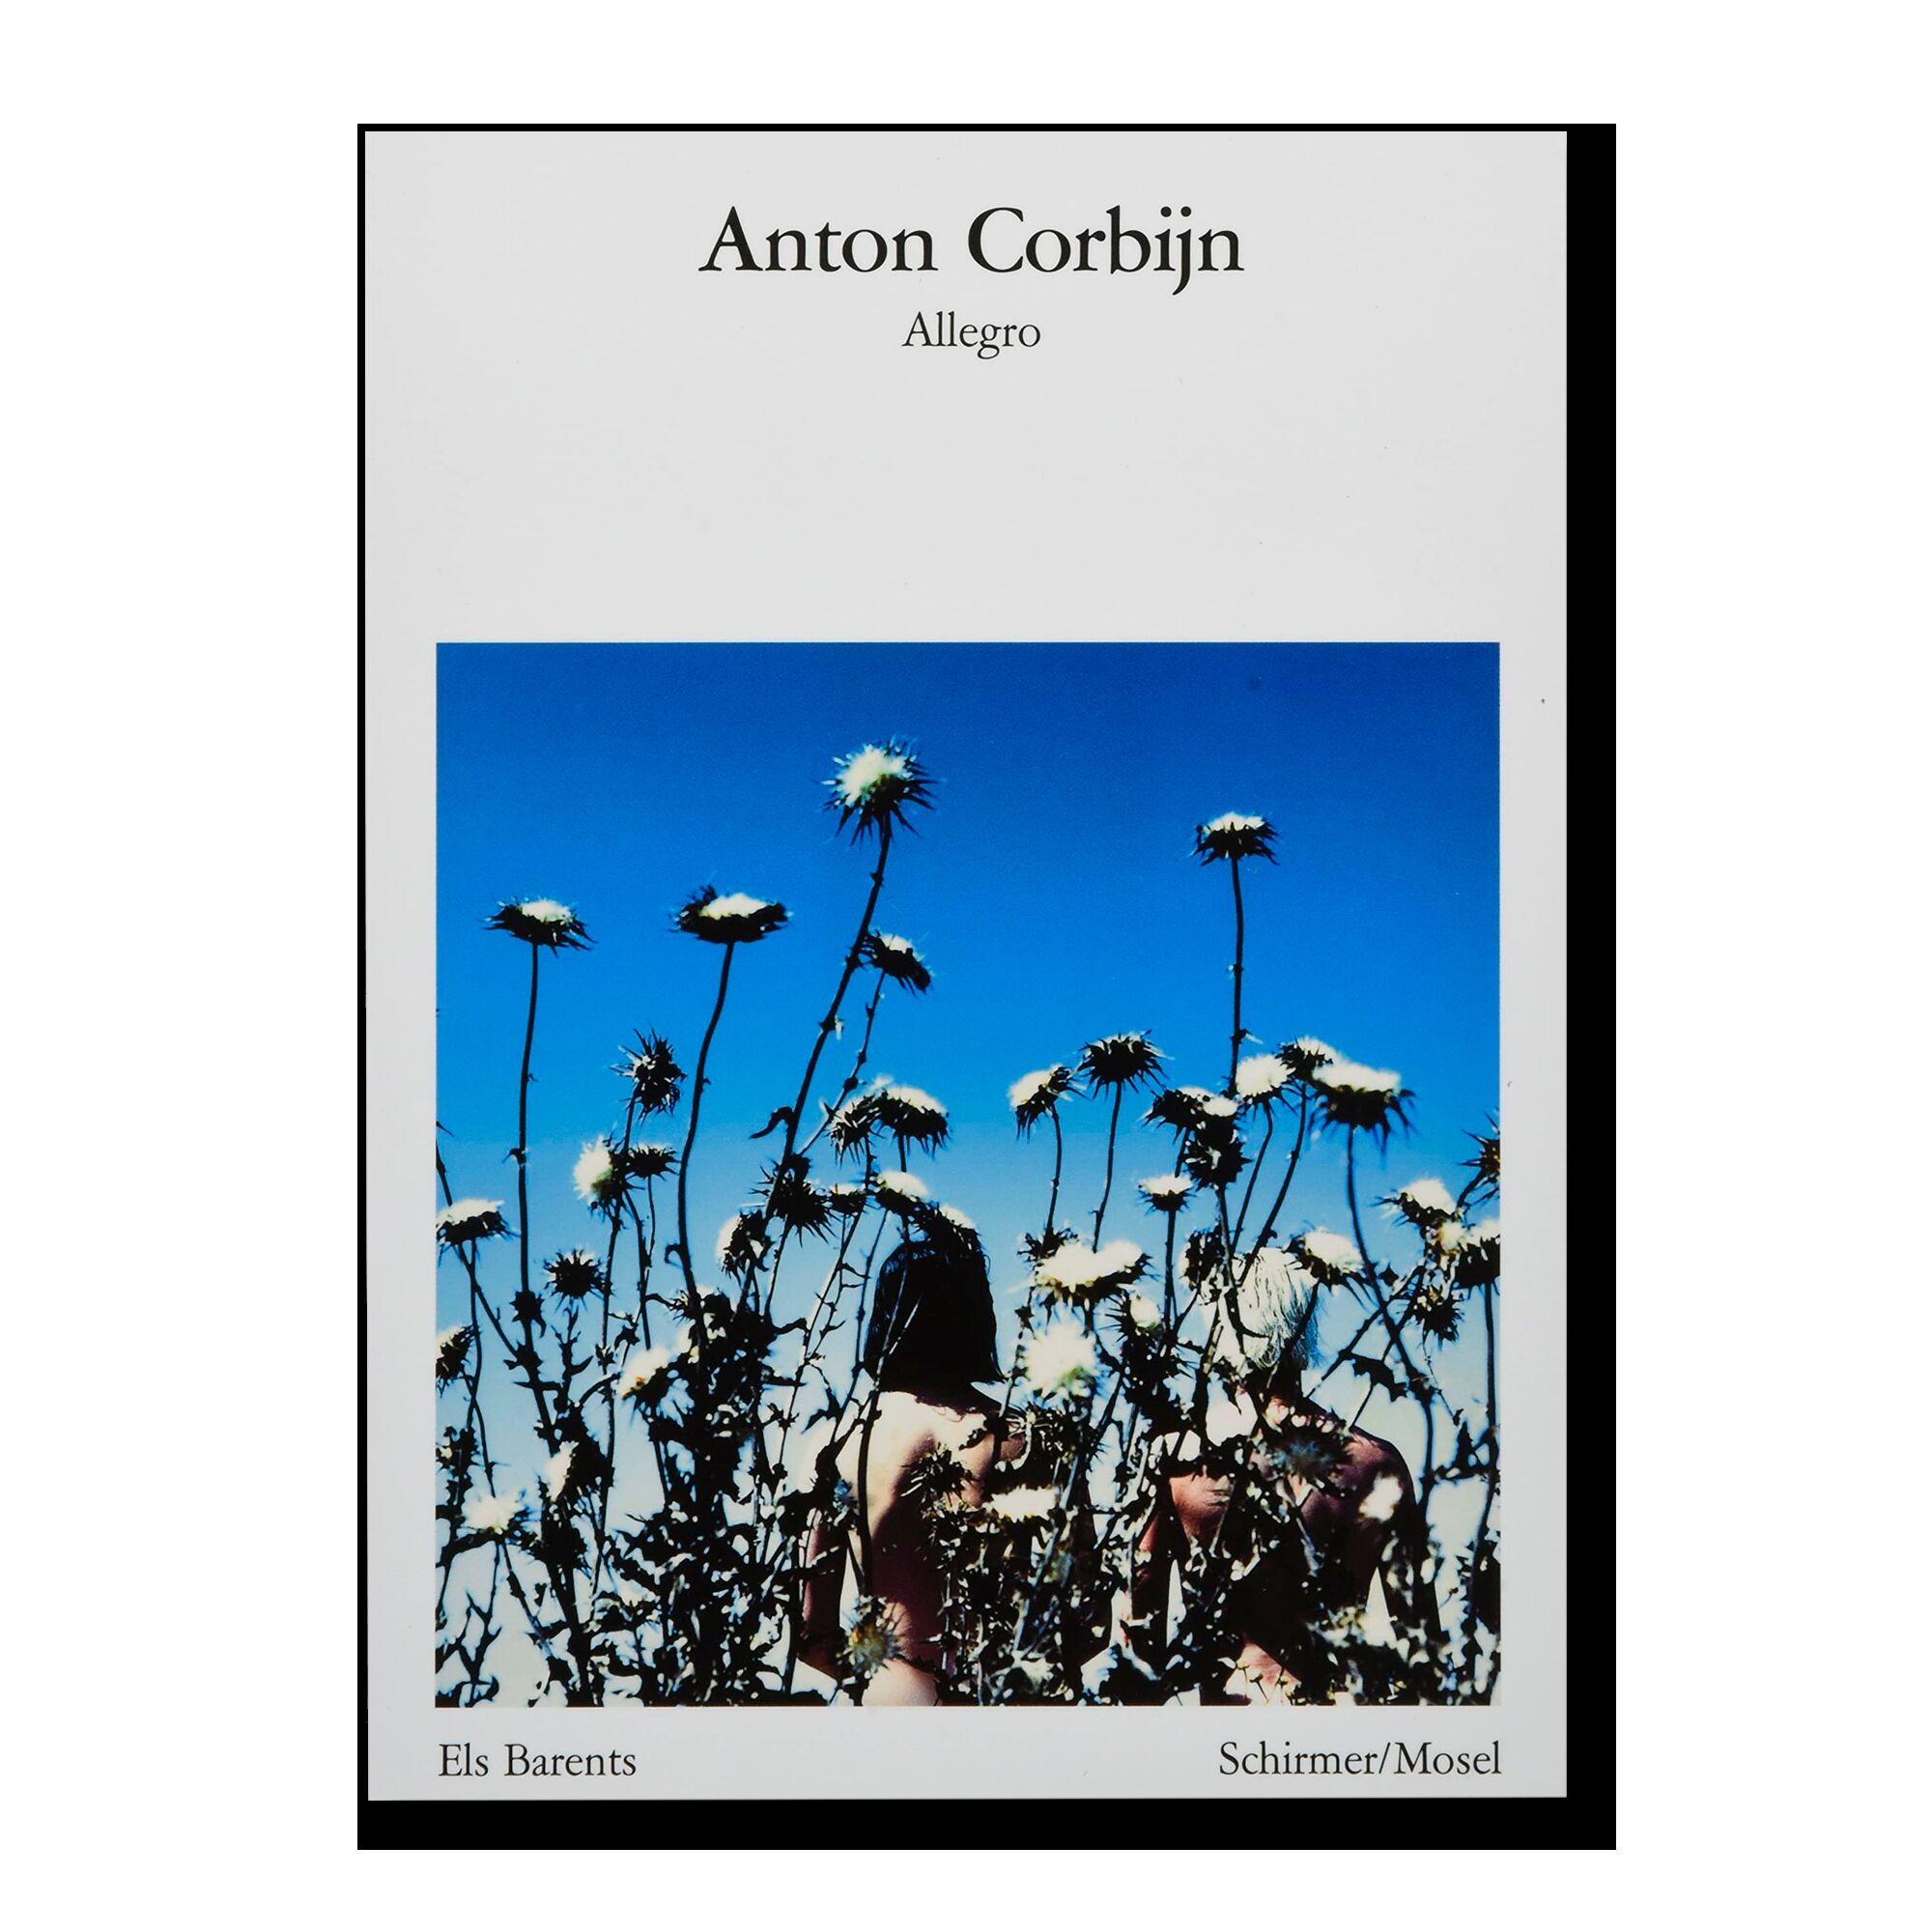 Anton Corbijn. Allegro